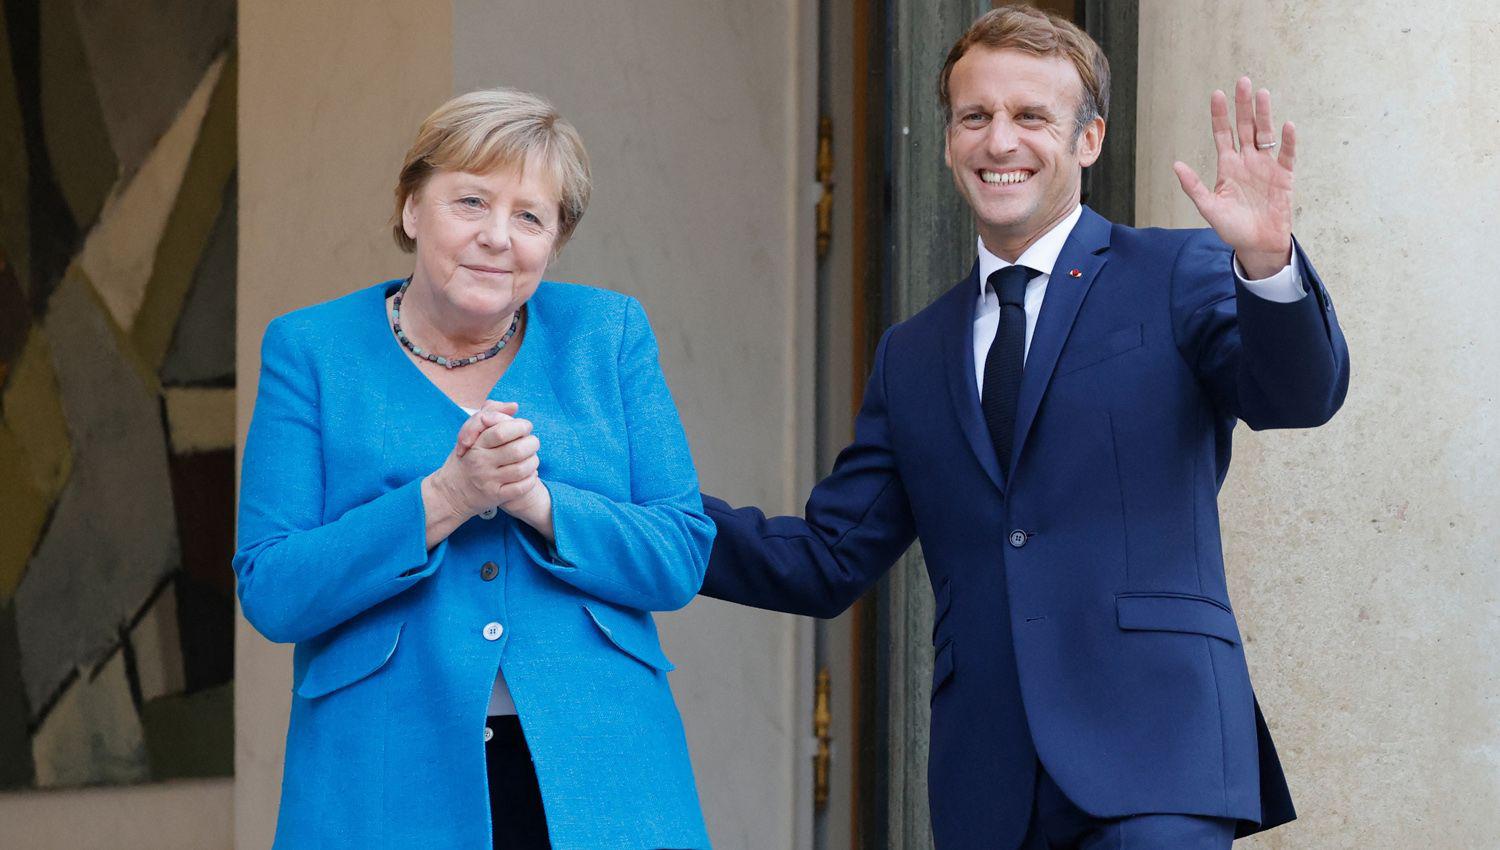 Merkel mantuvo un uacuteltimo encuentro con Macron